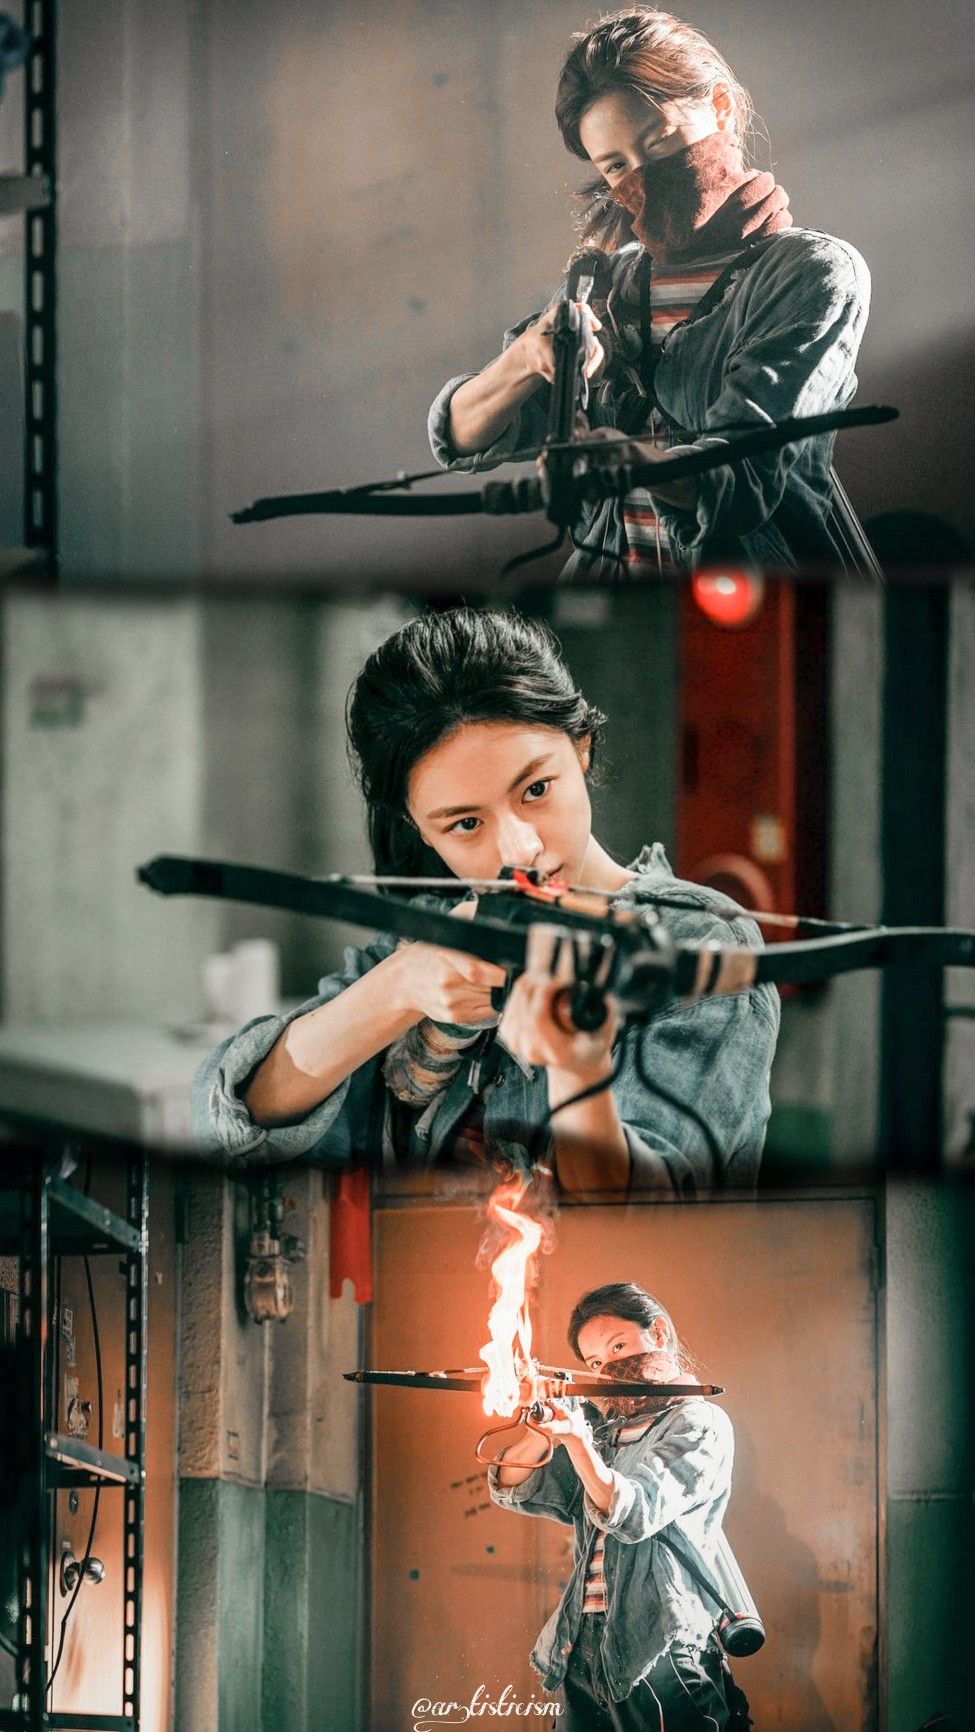 harper bazaar phim cua go yoon jung 3 3 - 7 phim làm nên sự nghiệp của “mỹ nhân thế hệ mới” Go Yoon Jung